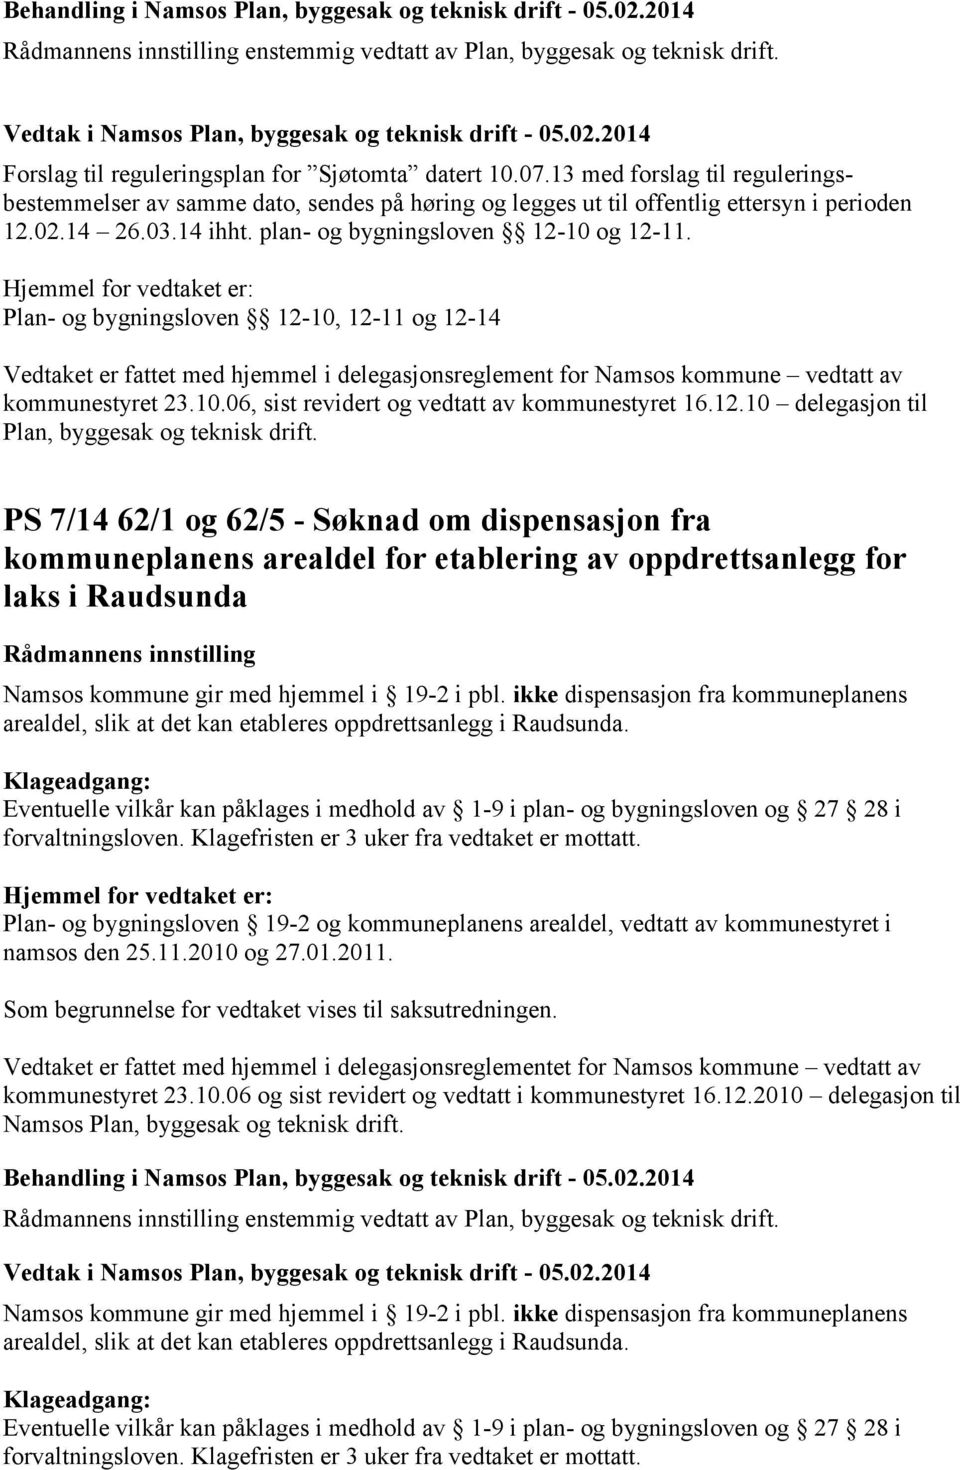 Plan- og bygningsloven 12-10, 12-11 og 12-14 Vedtaket er fattet med hjemmel i delegasjonsreglement for Namsos kommune vedtatt av kommunestyret 23.10.06, sist revidert og vedtatt av kommunestyret 16.